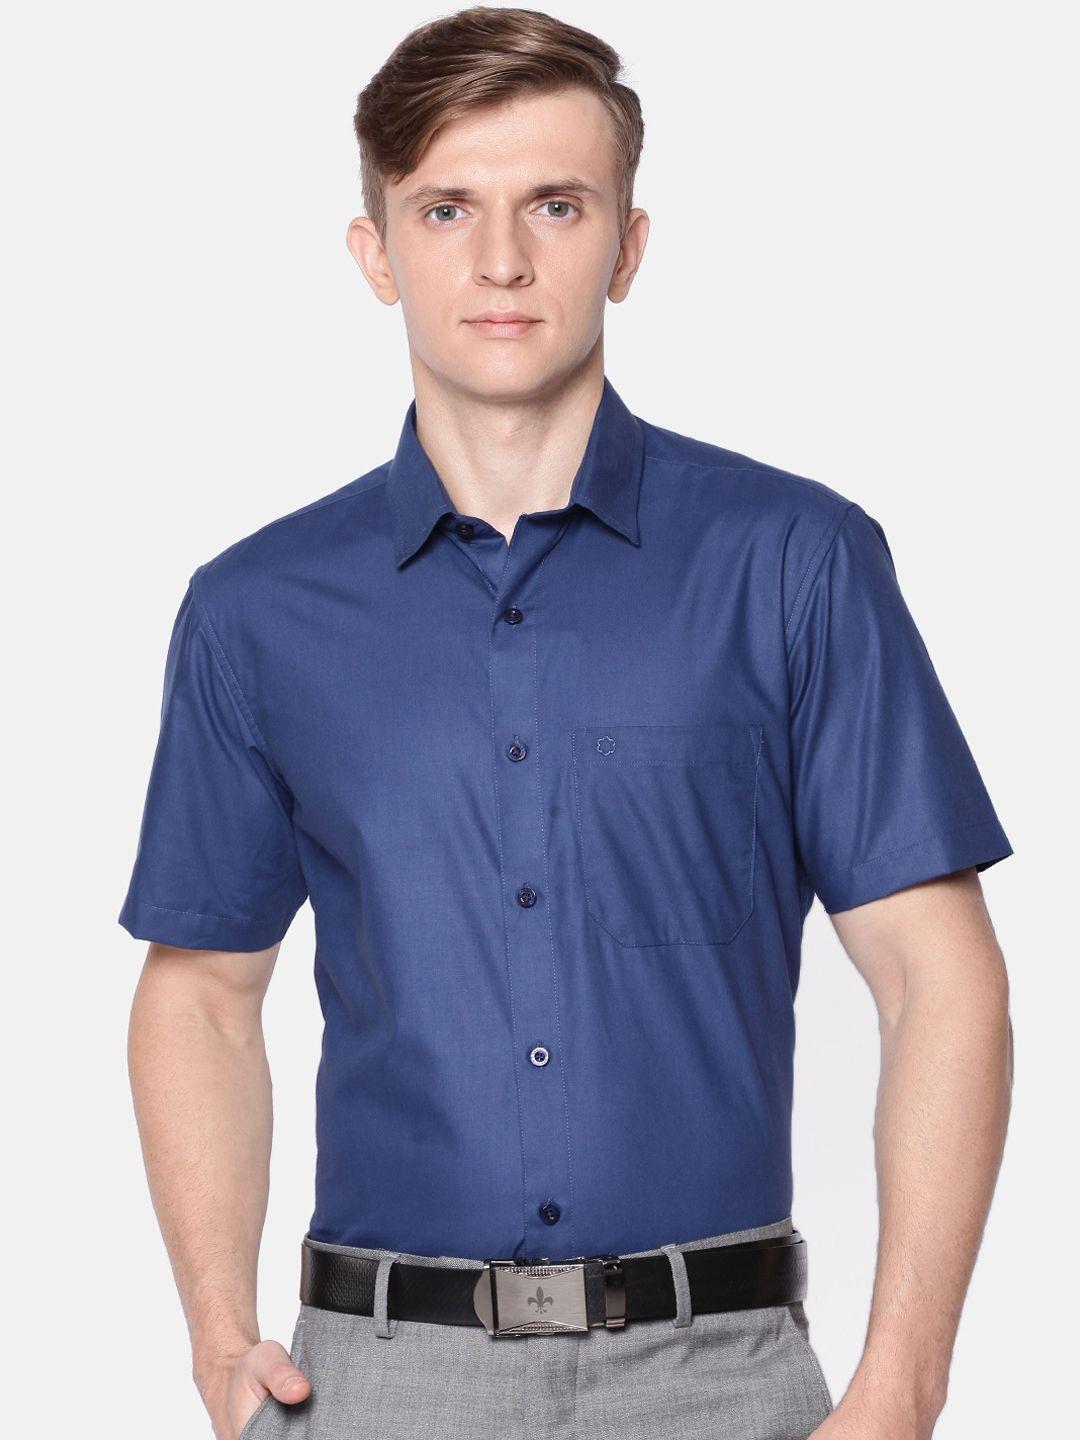 jansons men navy blue regular fit solid formal shirt